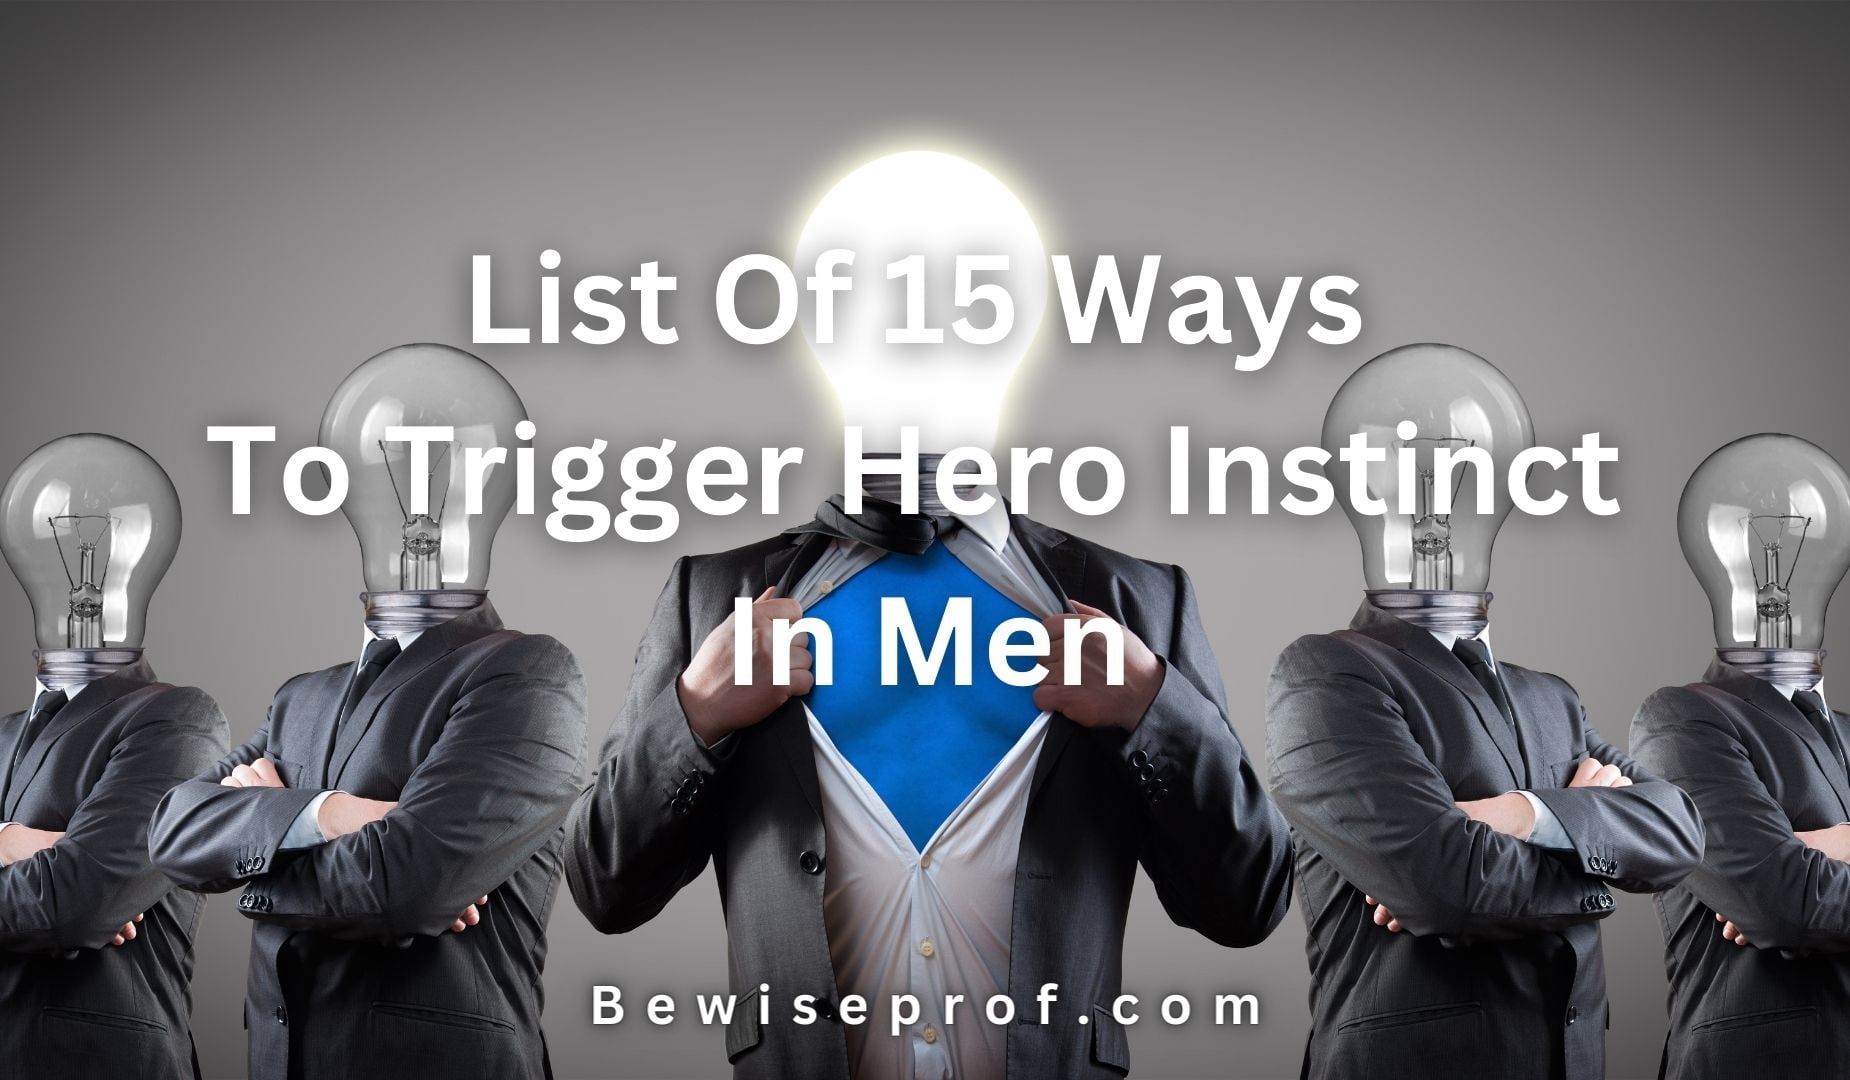 List Of 15 Ways To Trigger Hero Instinct In Men